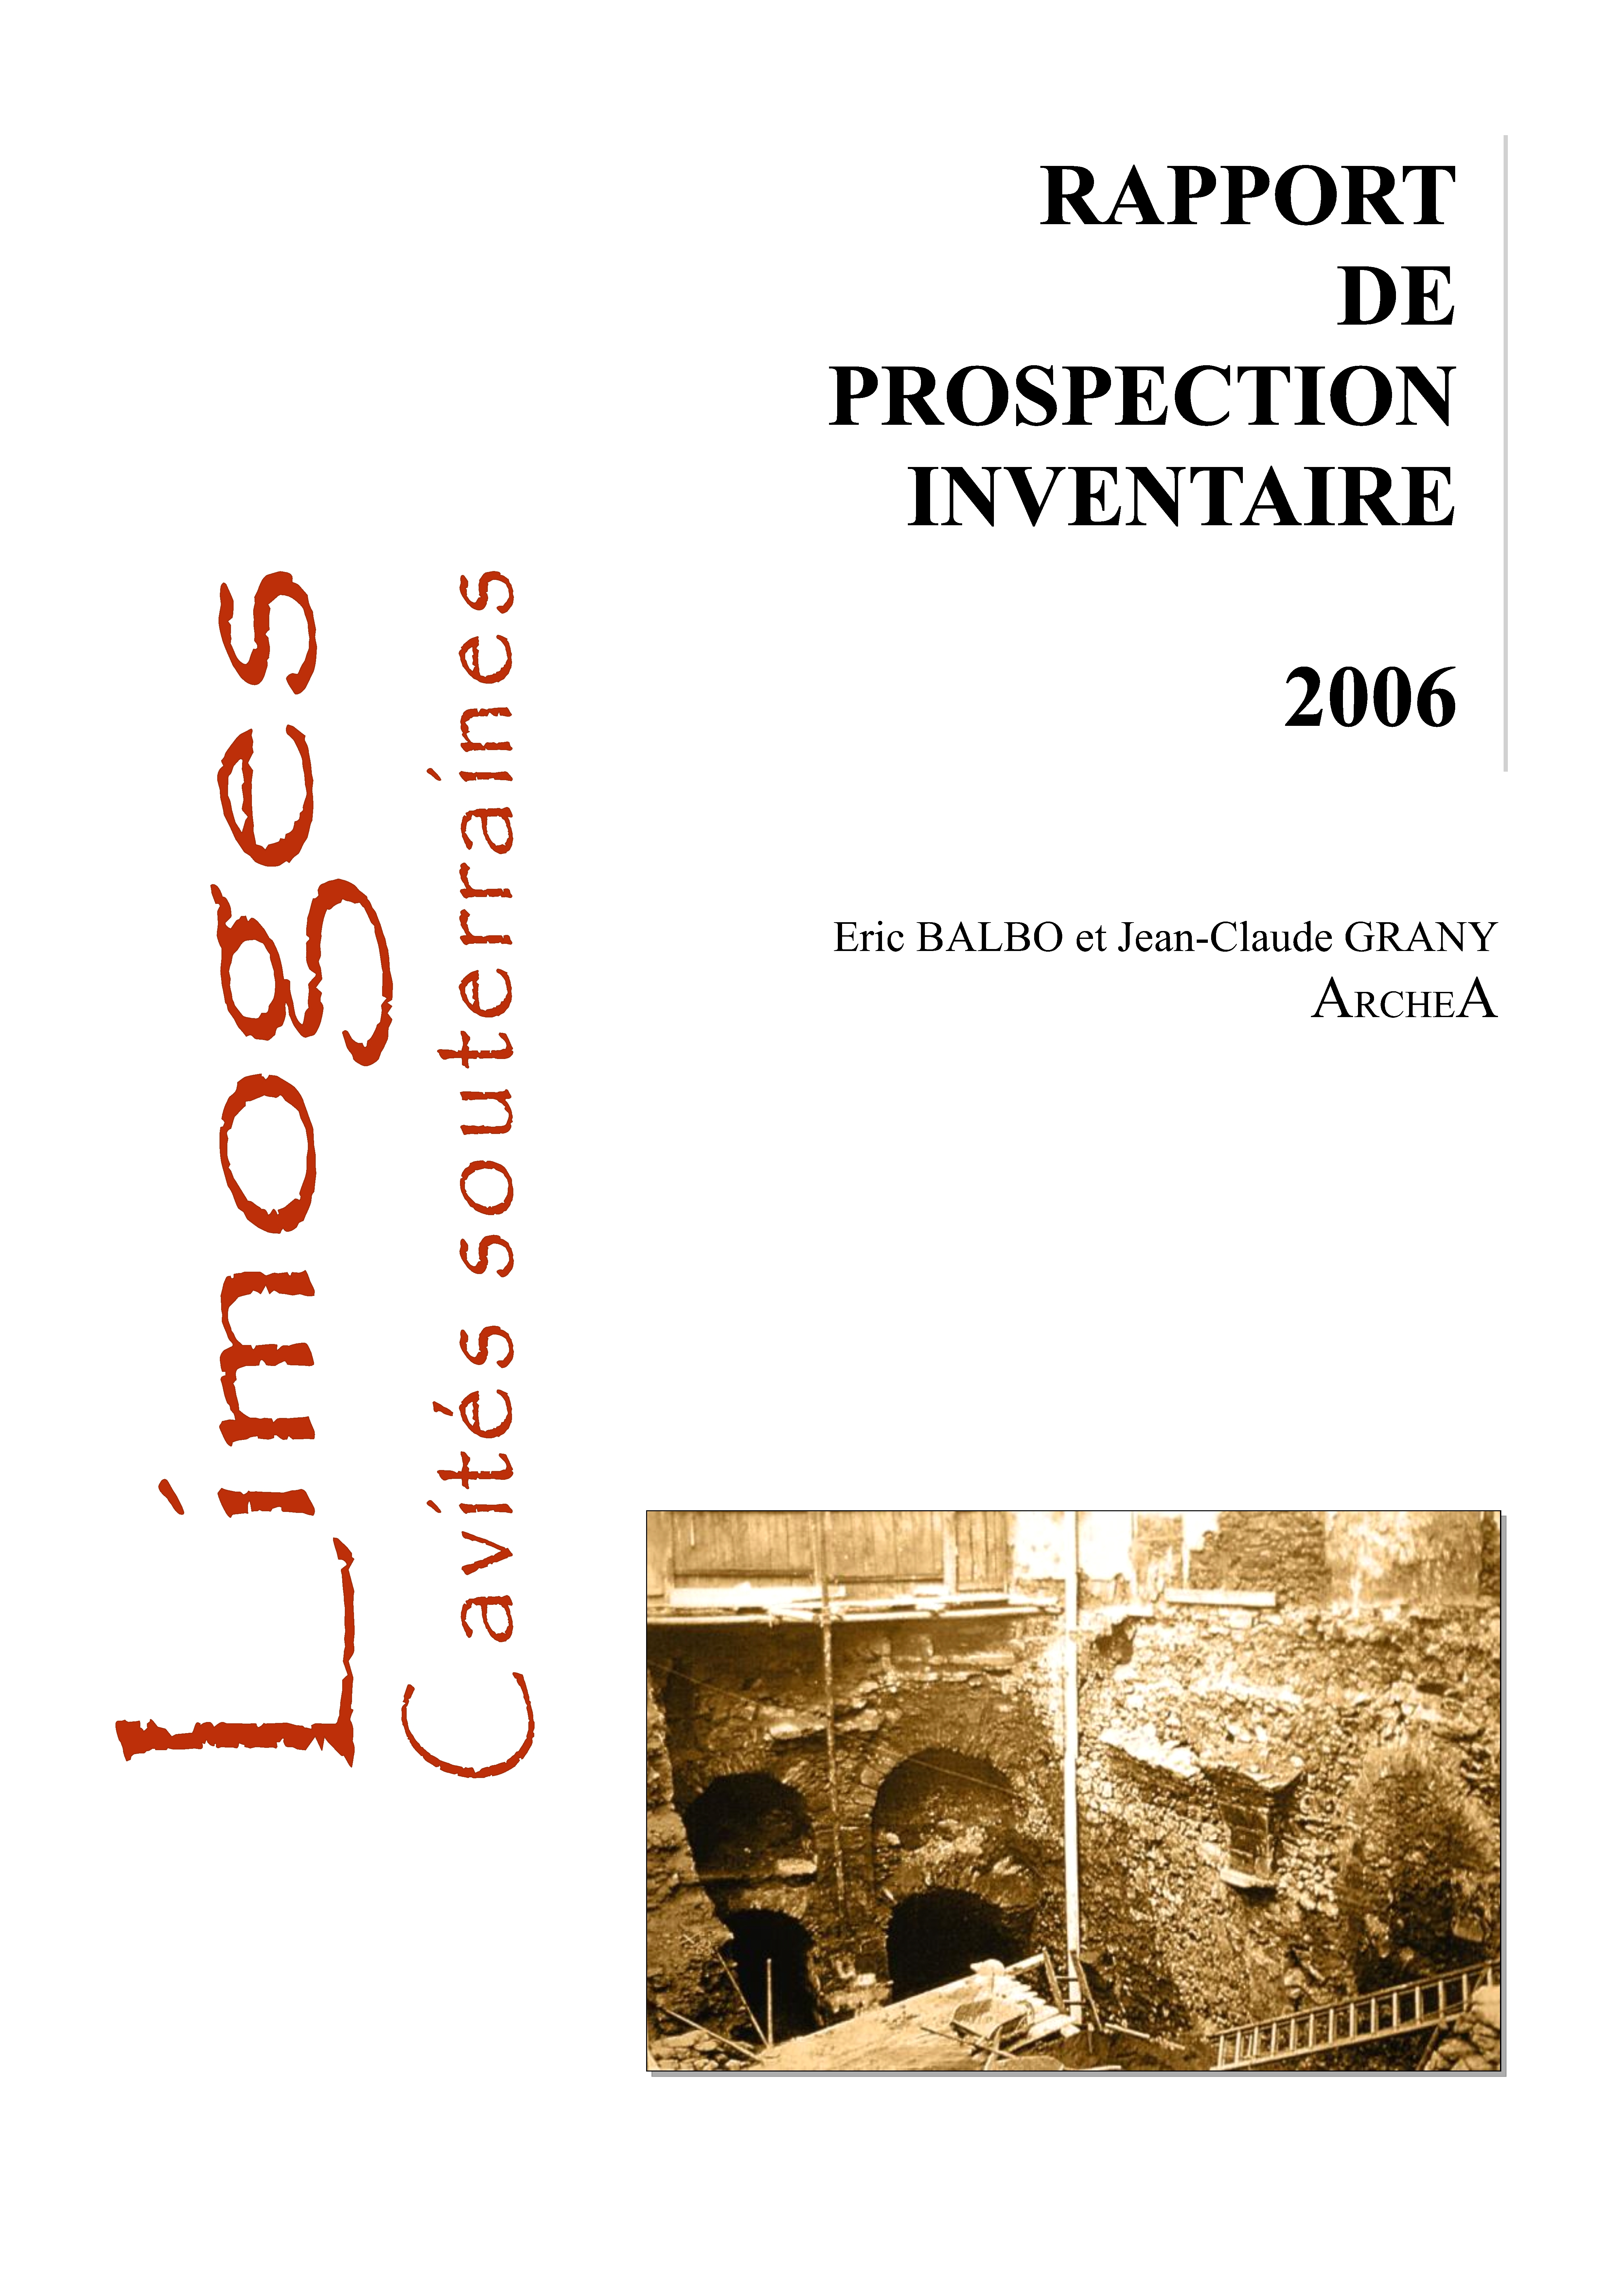 2006 - Prospection inventaire des cavités souterraines de Limoges